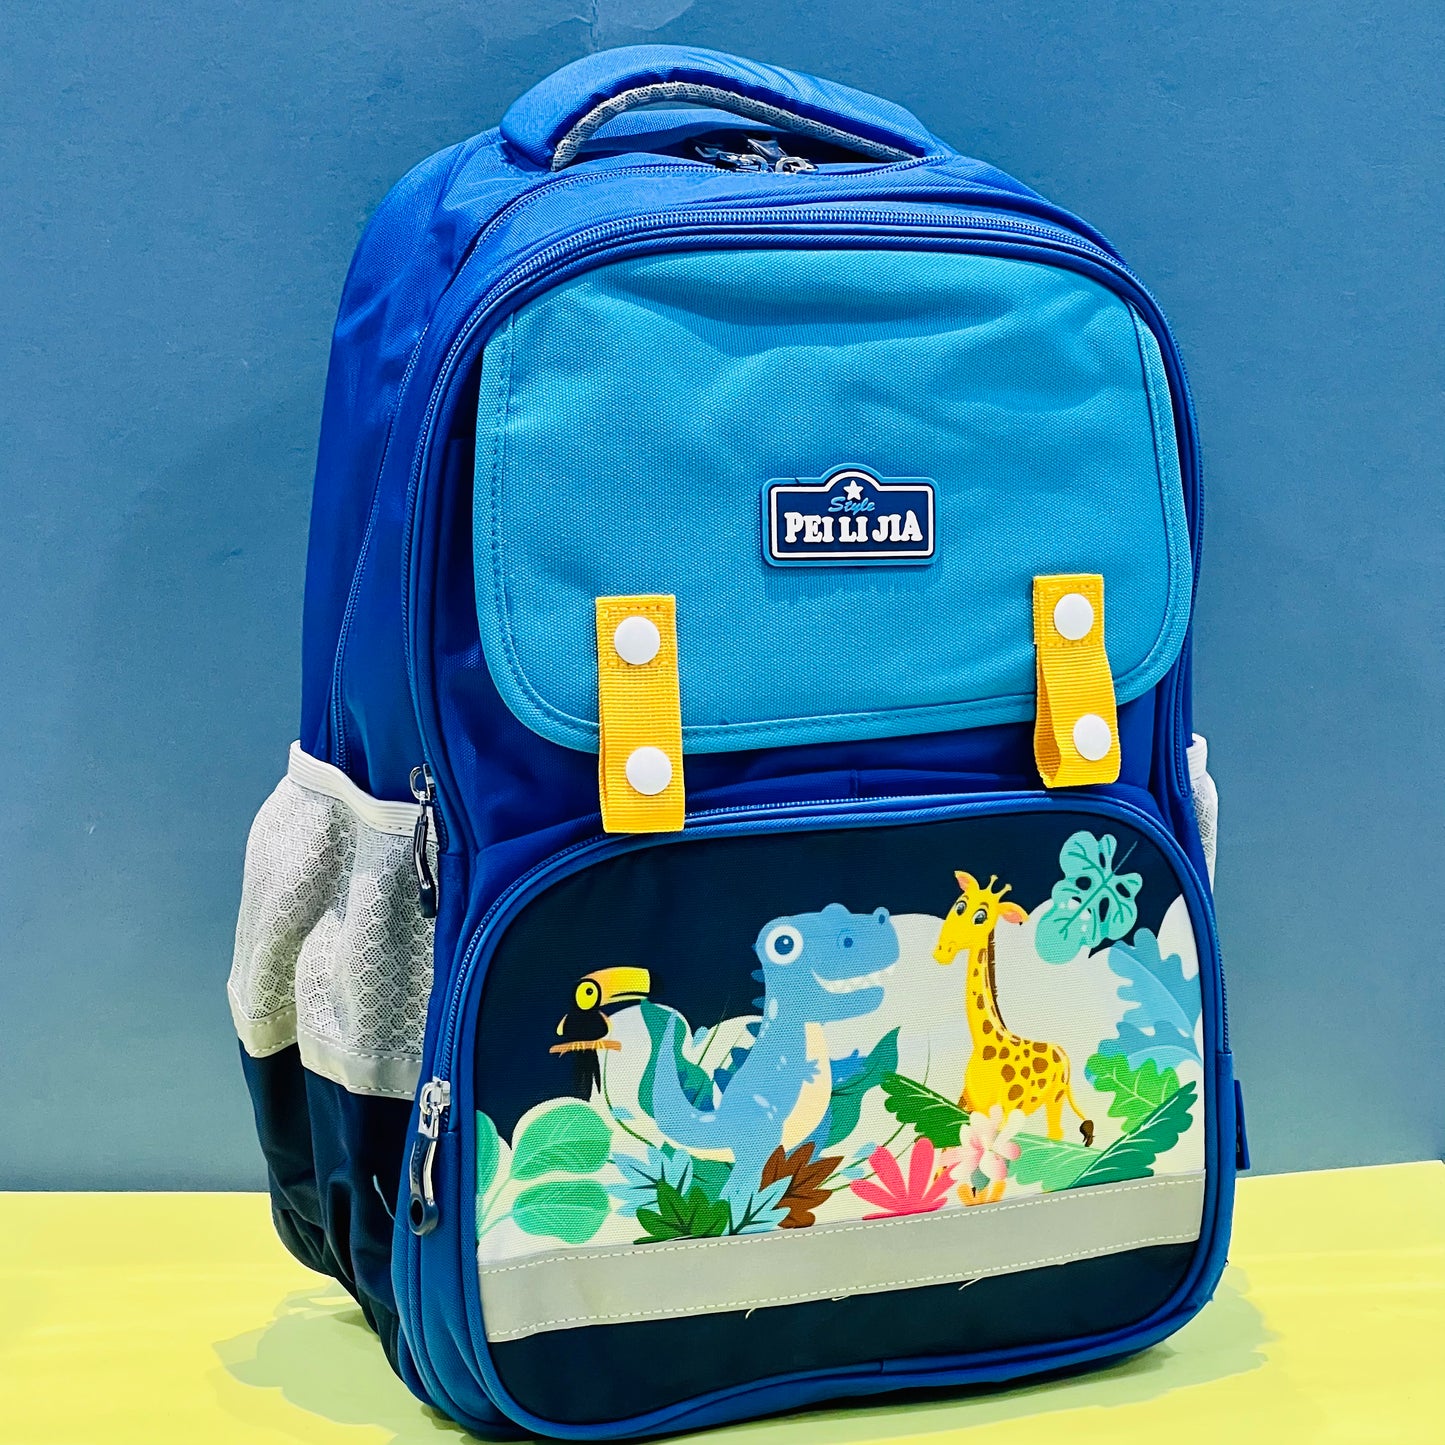 Super Cute Dino and Mermaid School Bags